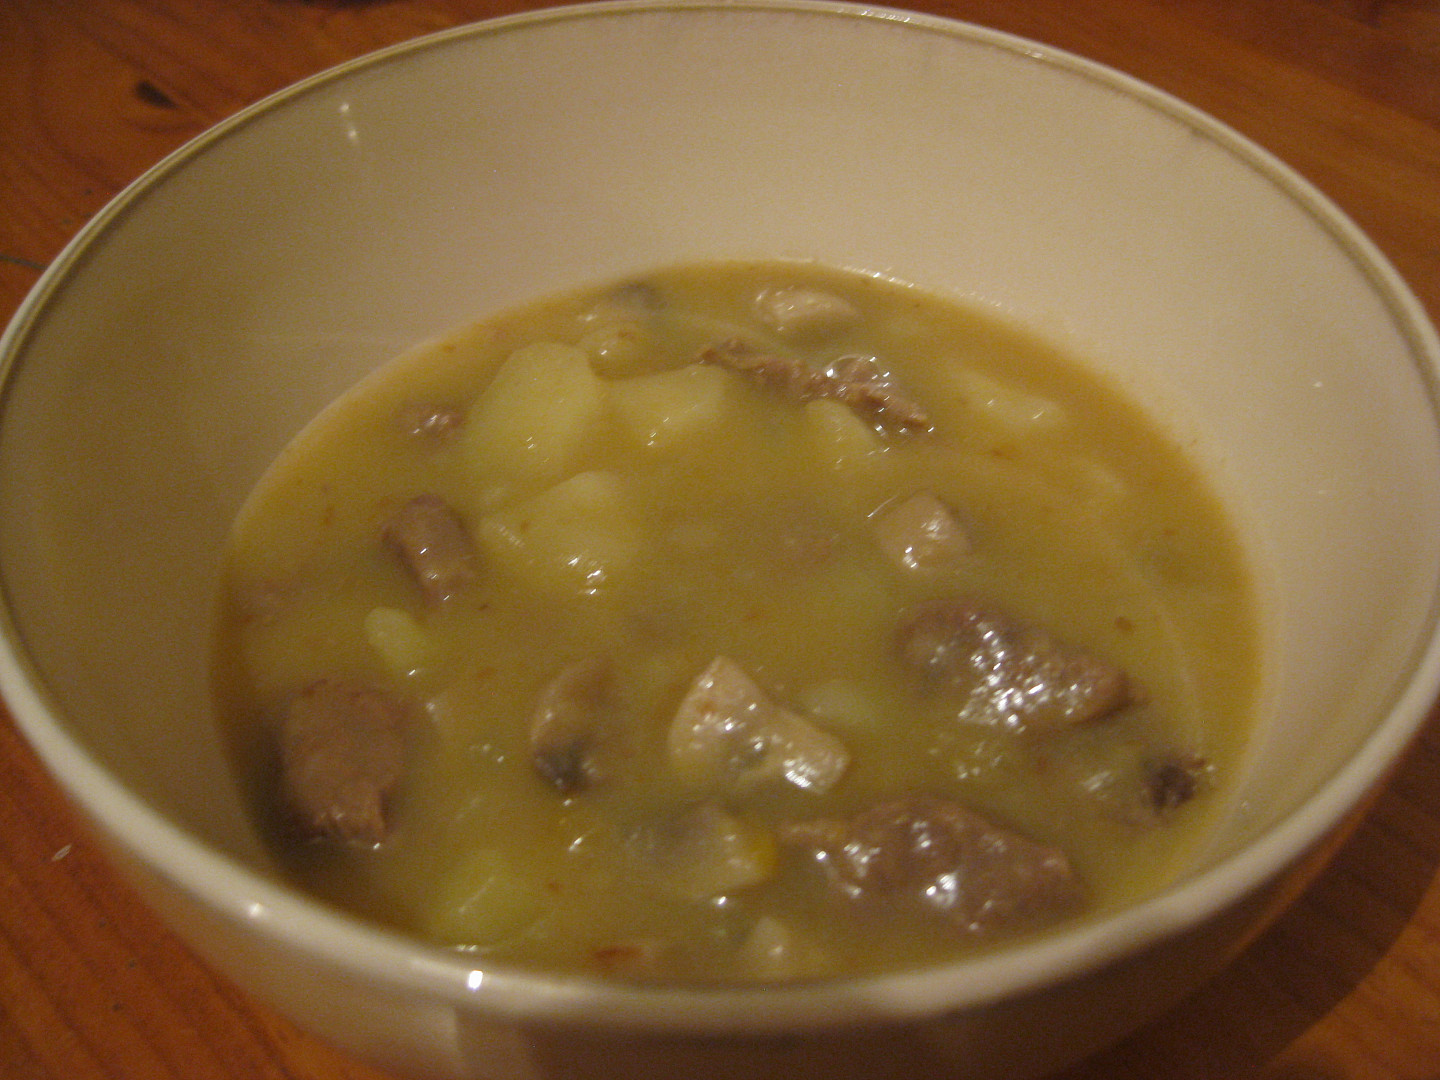 Hovězí na způsob irského stew